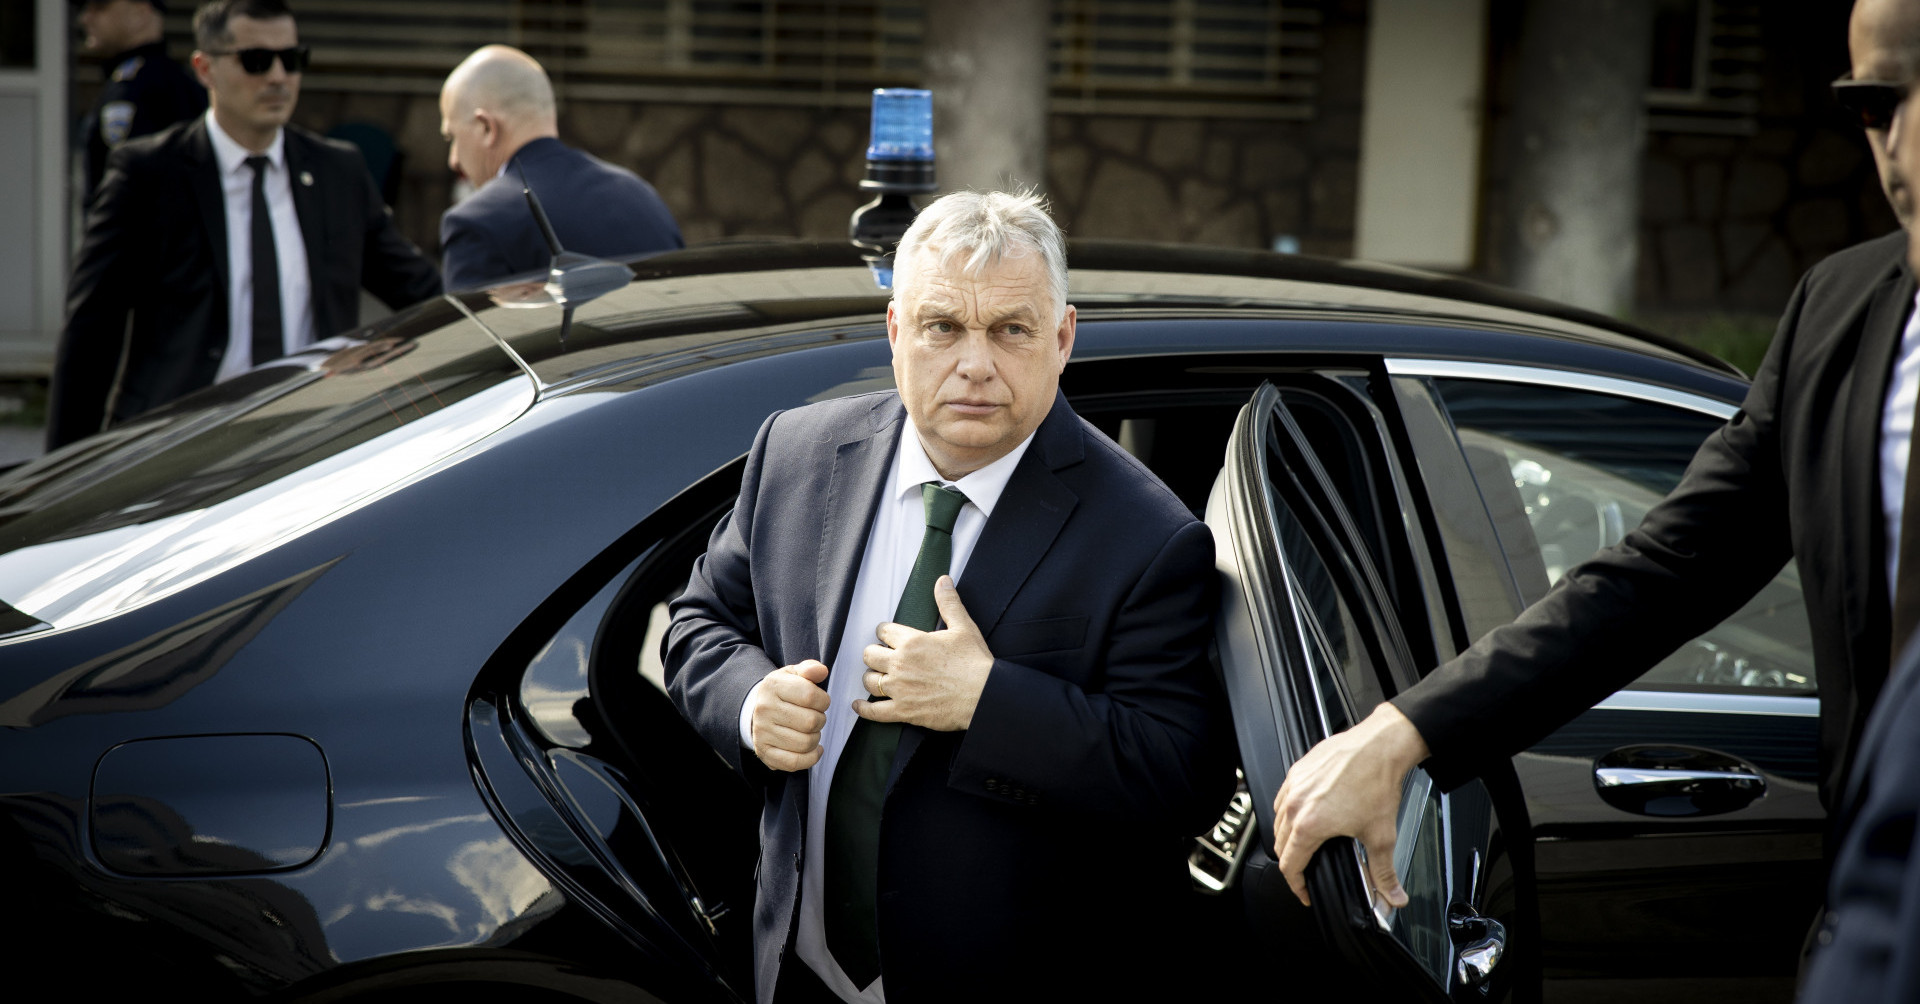 Két helyszín is visszamondta Orbánék konzervatív konferenciáját Brüsszelben